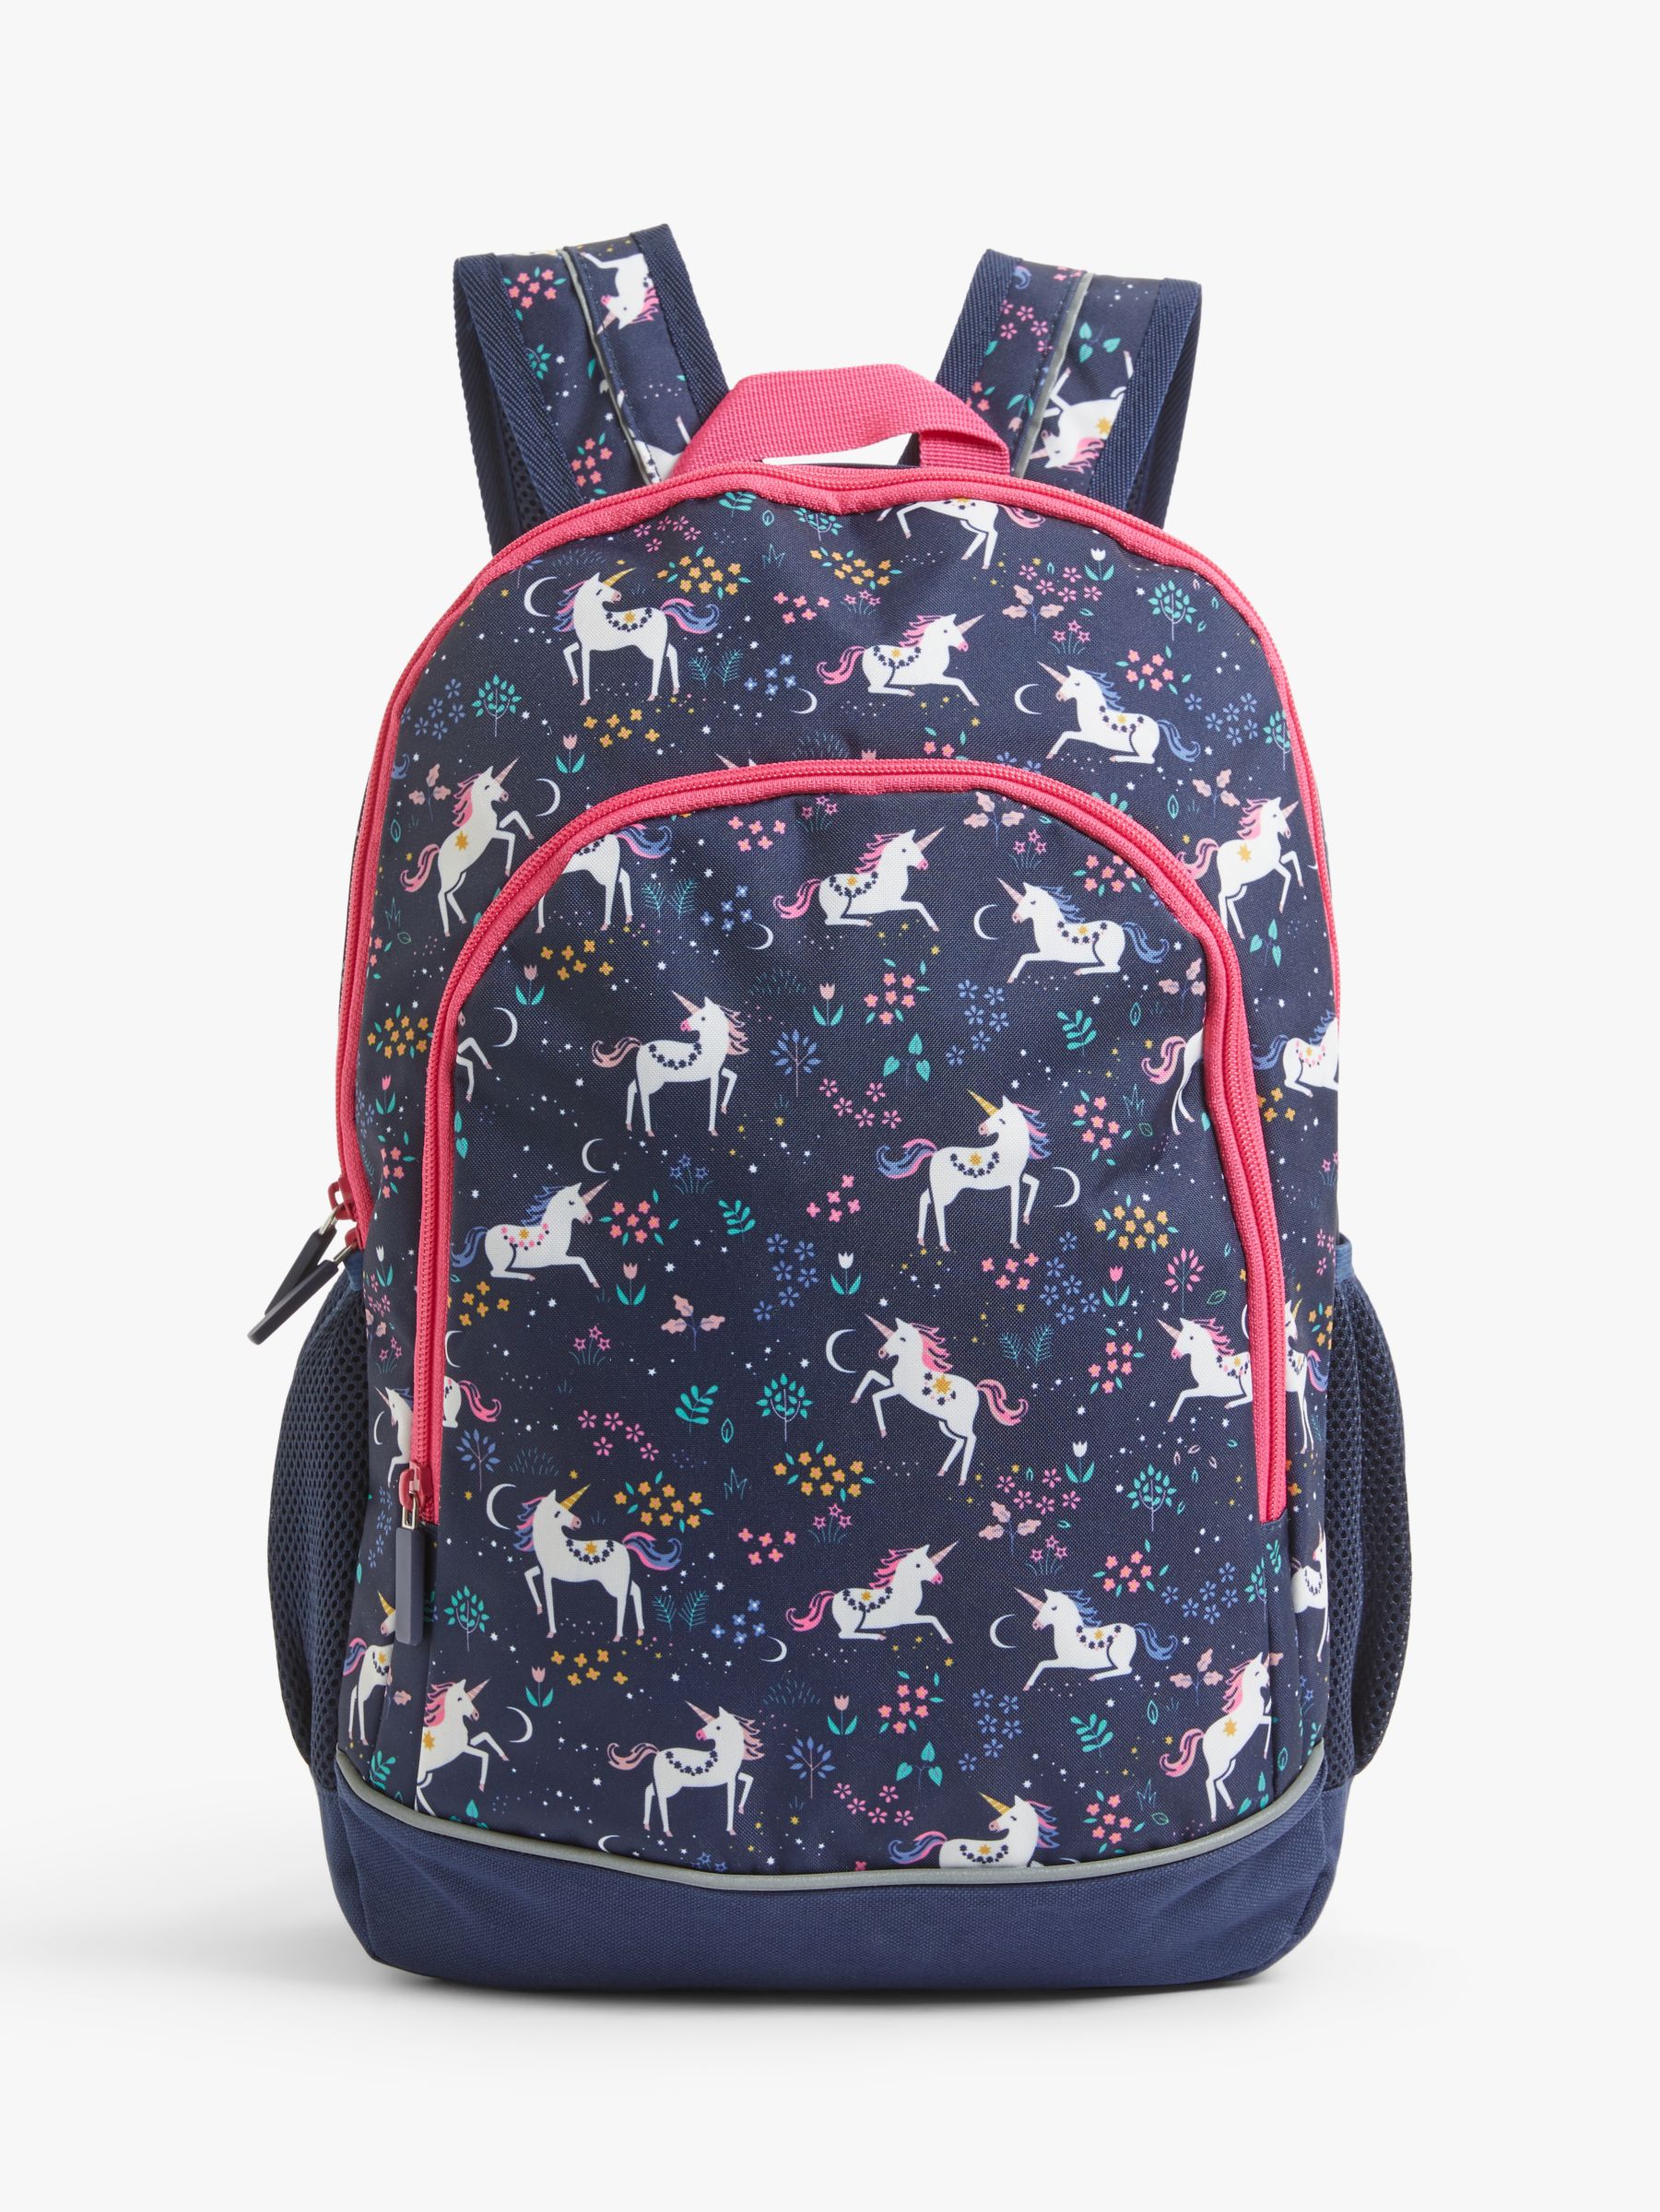 John Lewis & Partners Unicorn Children's Backpack